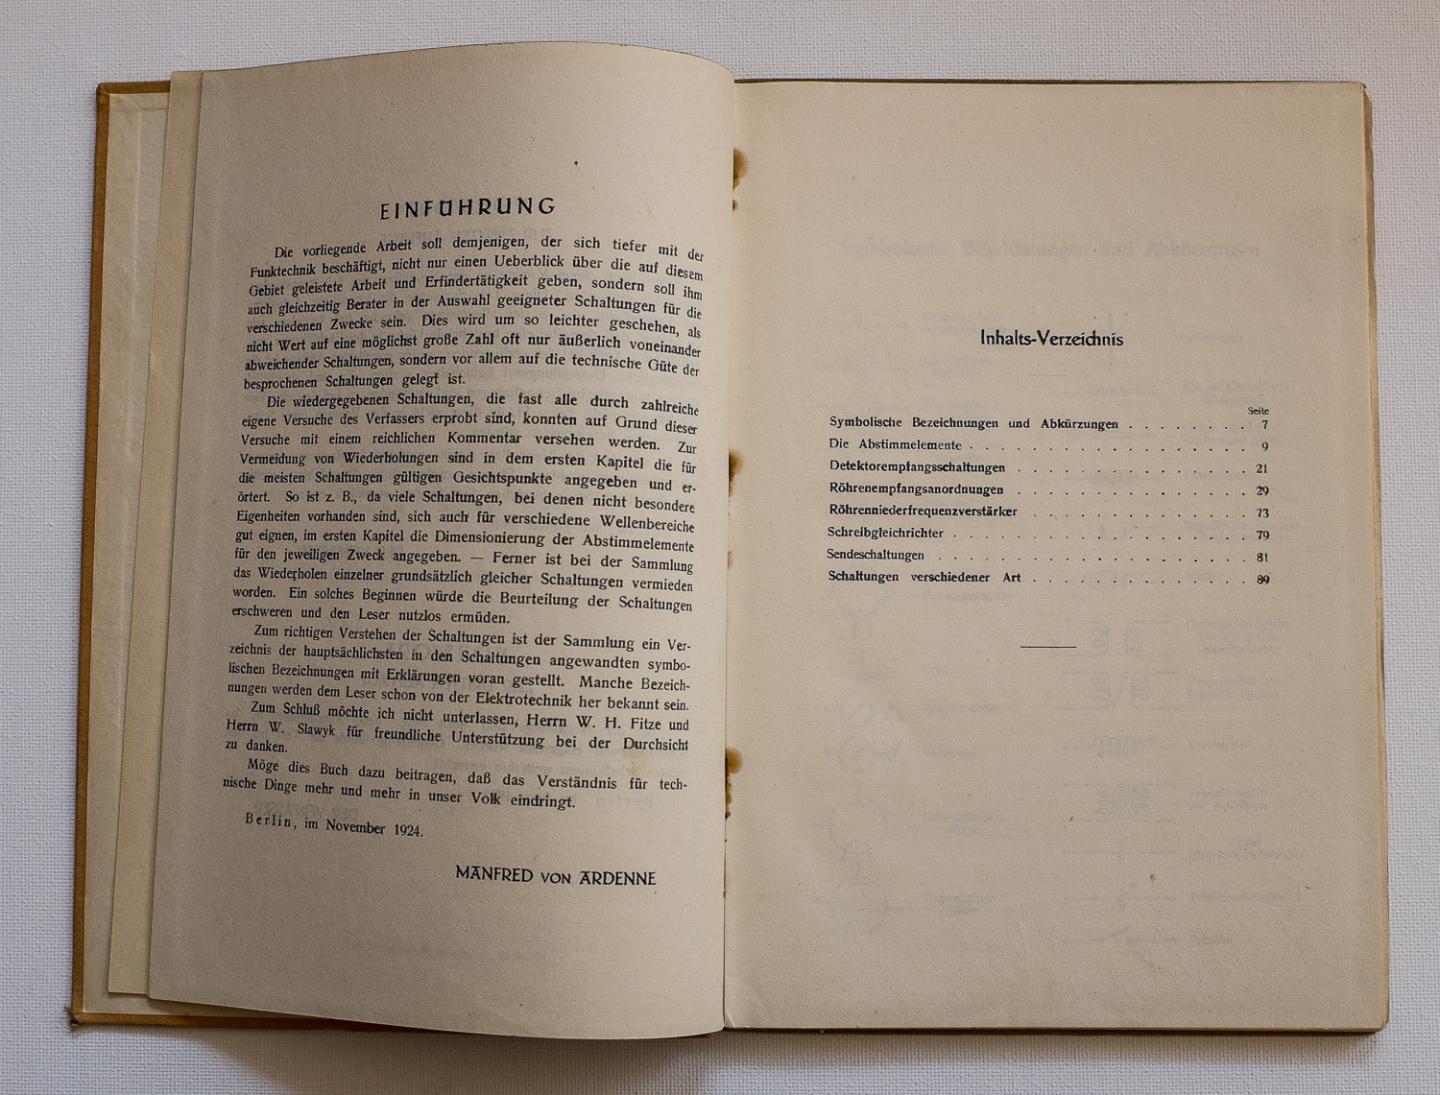 Ardenne, Manfred von - Des Funk-Bastlers erprobte Schaltungen mit Erläuterungen und genauen Abmessungen nach eigenen Untersuchungen ; mit vielen Abb. im Text u. 4 Taf.